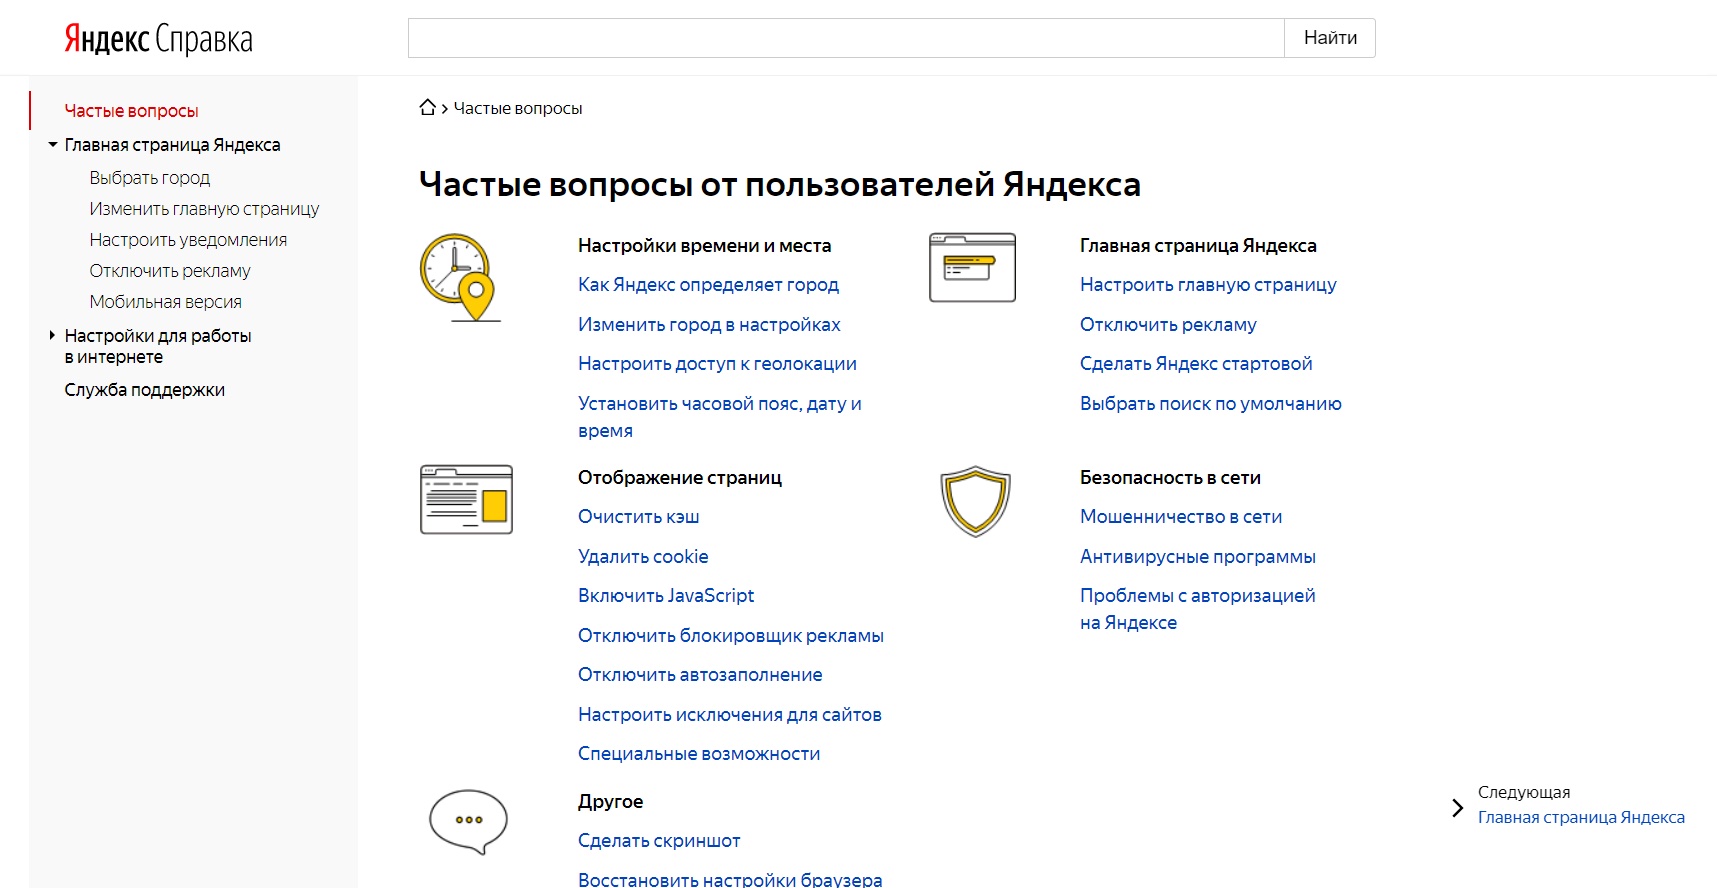 Пример оформления FAQ в Яндекс.Справке